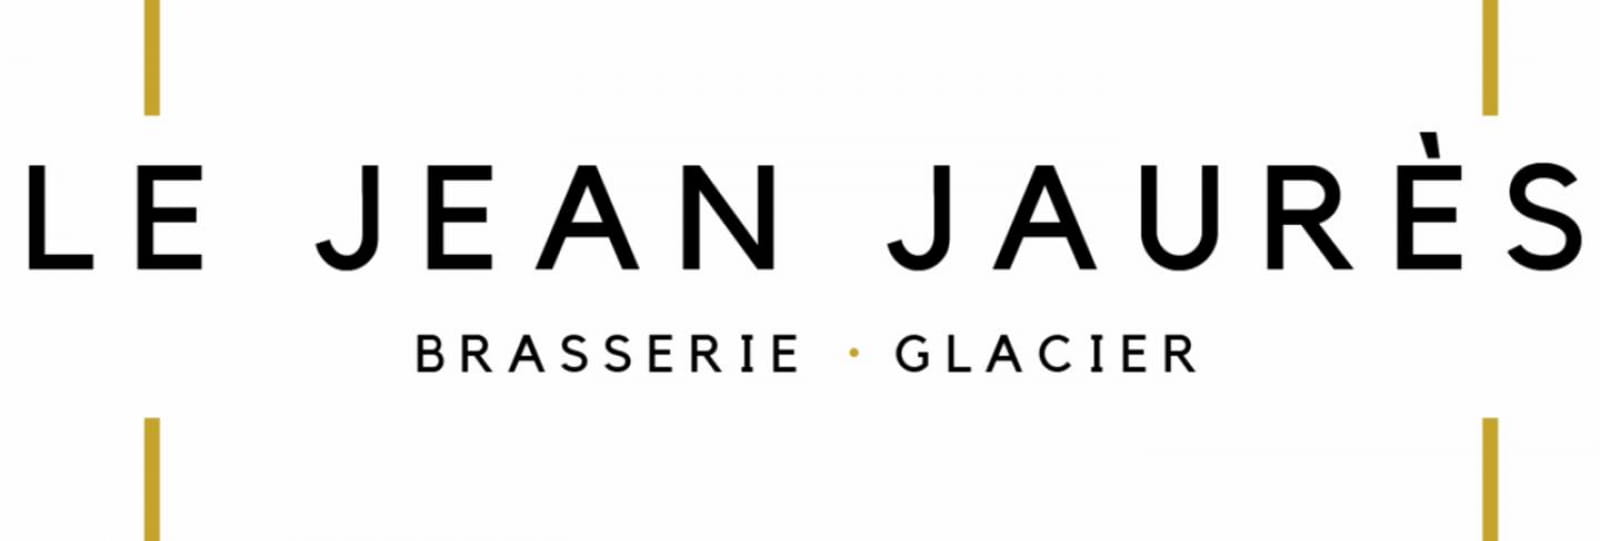 Le Jean Jaurès